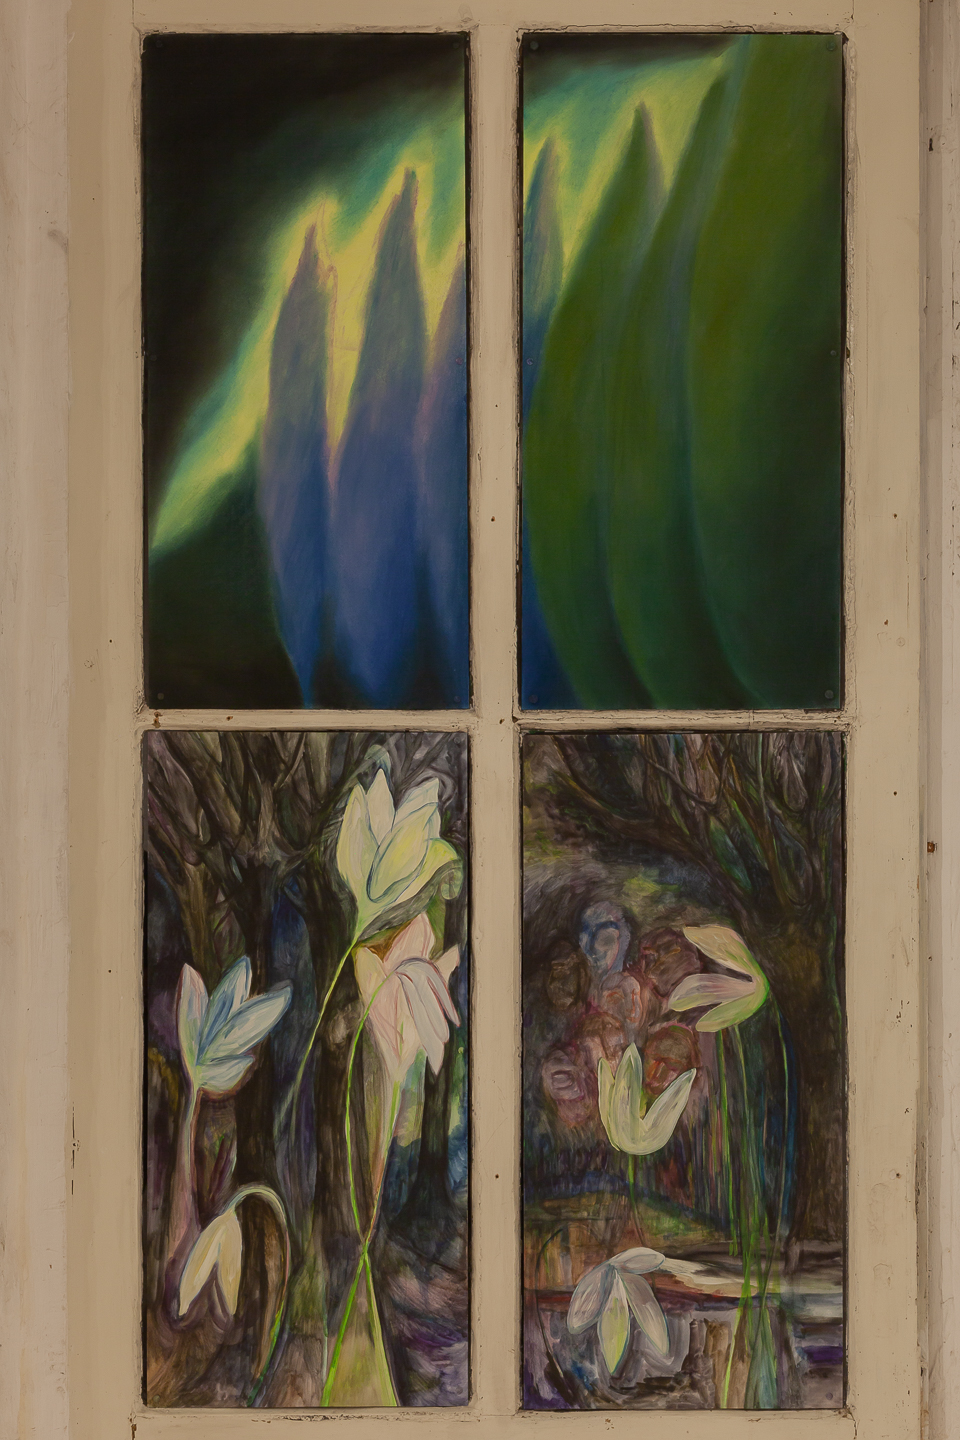 Jacent, Cyprès, 2022, soft pastel on paper, 38×80 cm (each part); Fleurs de nuit, 2022, watercolor on paper, 38×80 cm (each part)